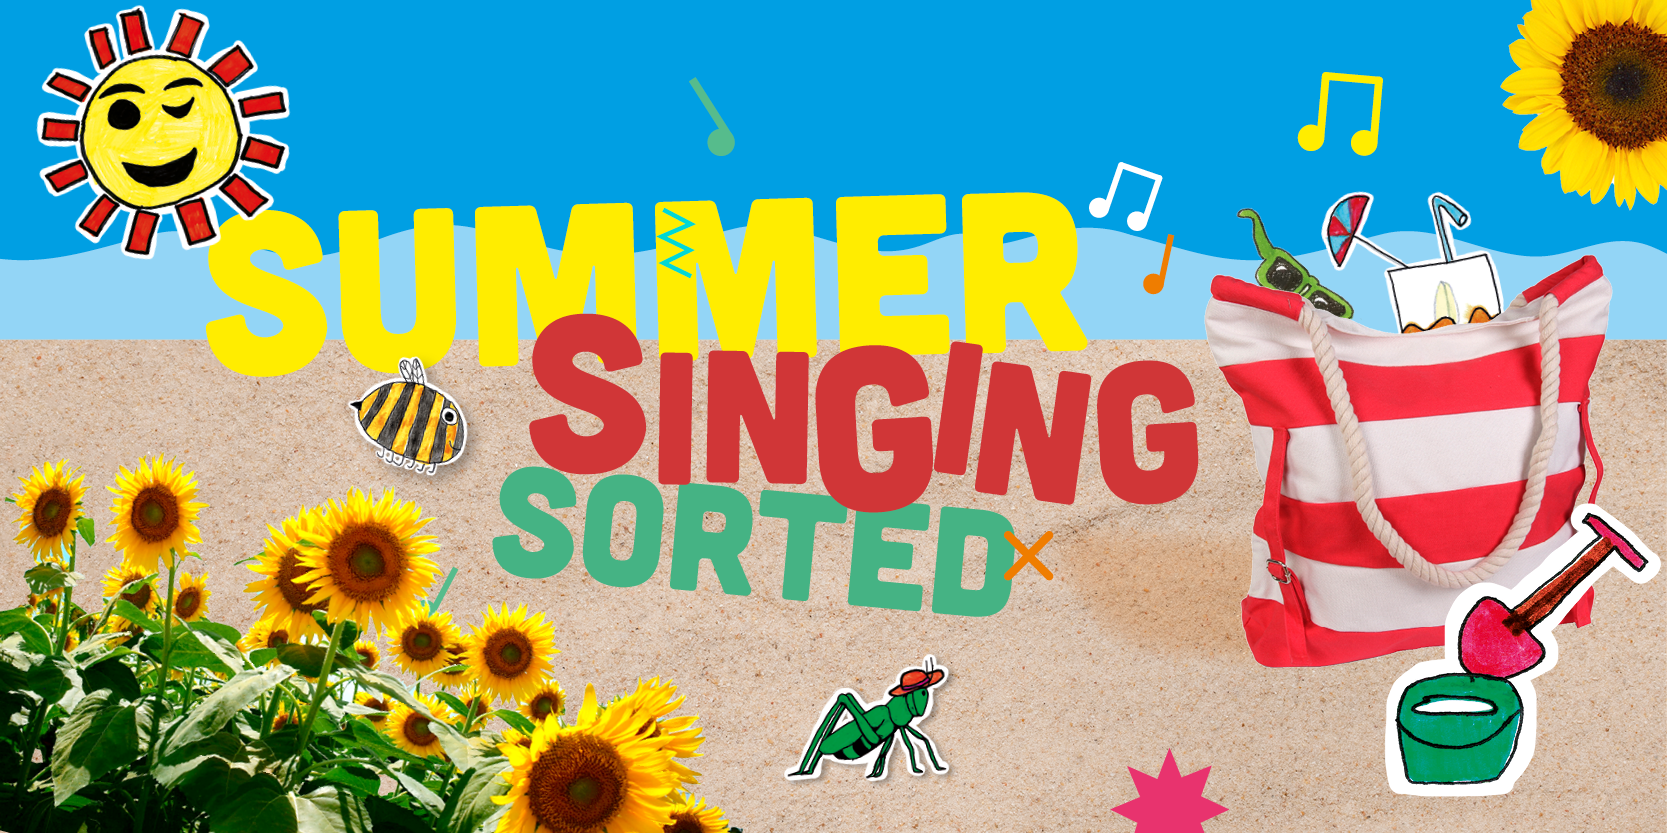 Summer Singing Sorted